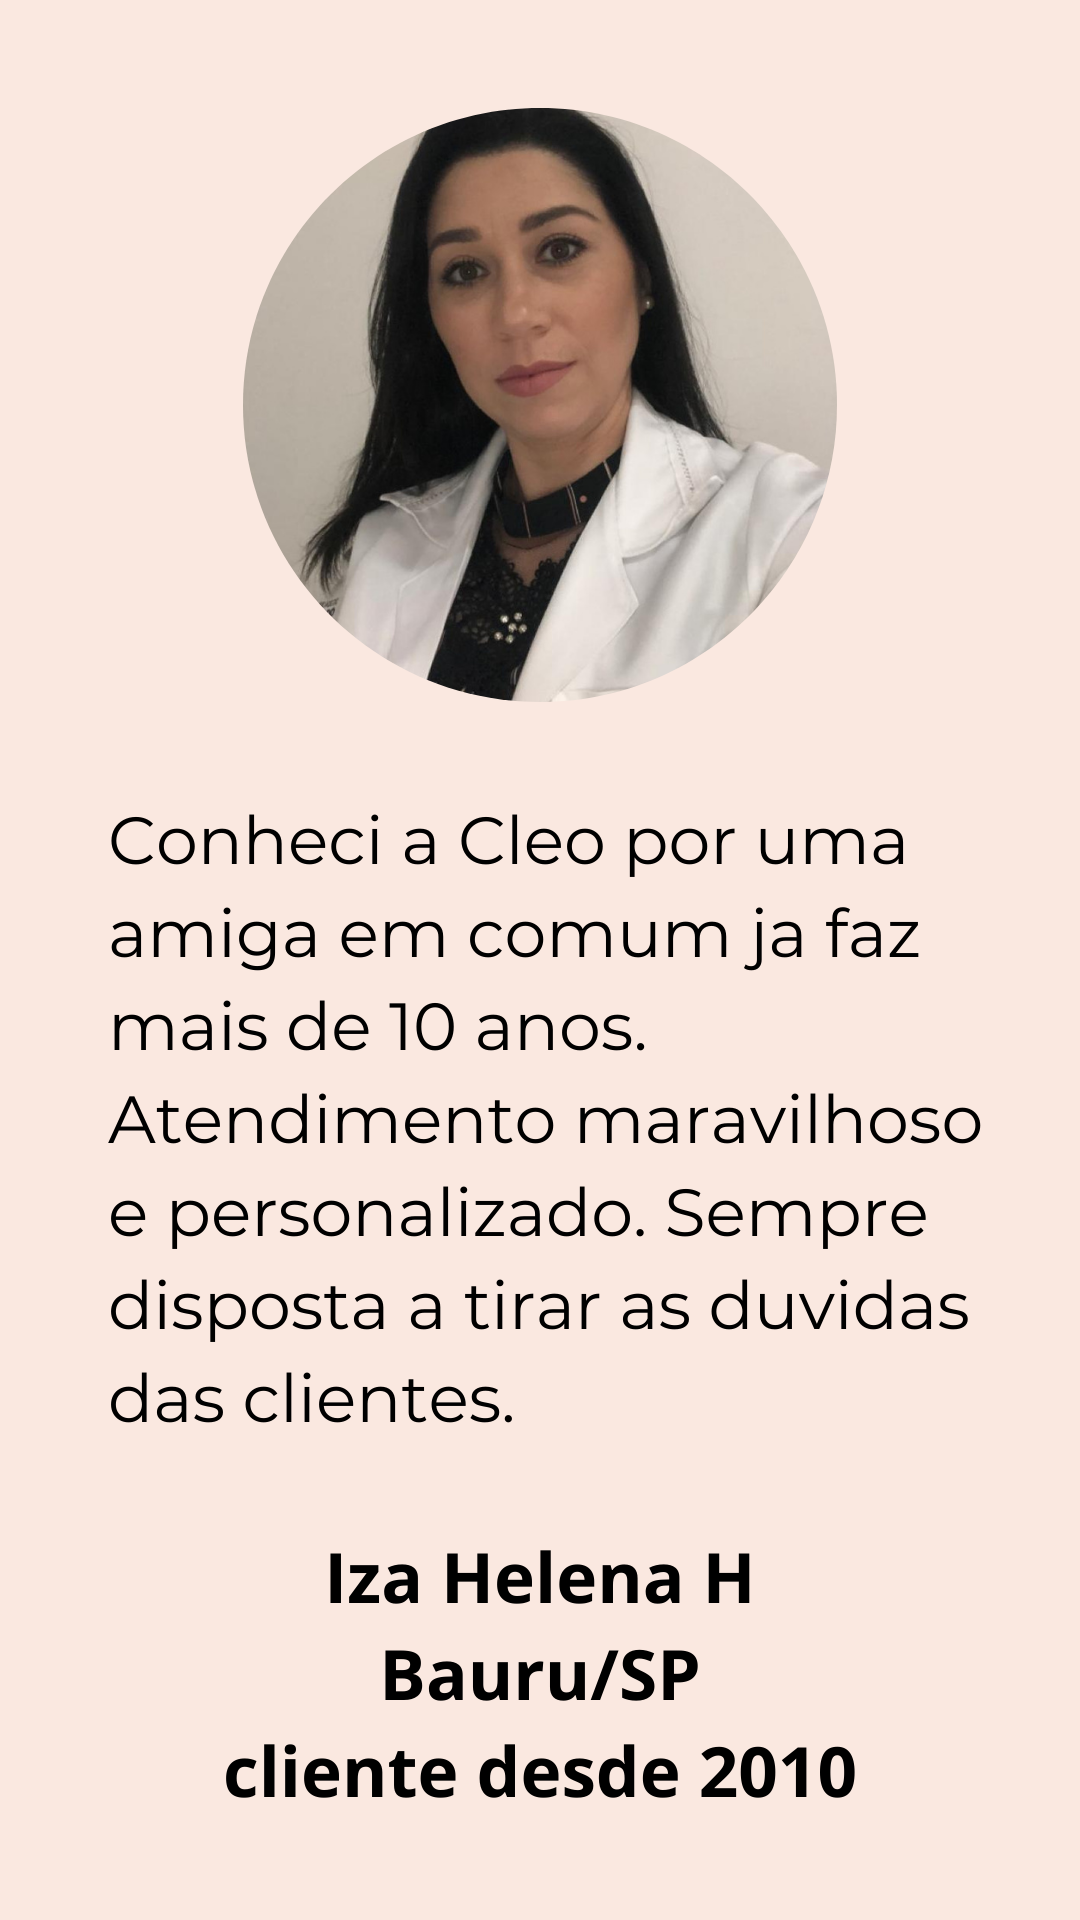 Conheci a Cléo no Instagram, sou do Rio e amei comprar e trocar ideia com ela. O atendimento é Maravilhoso!!